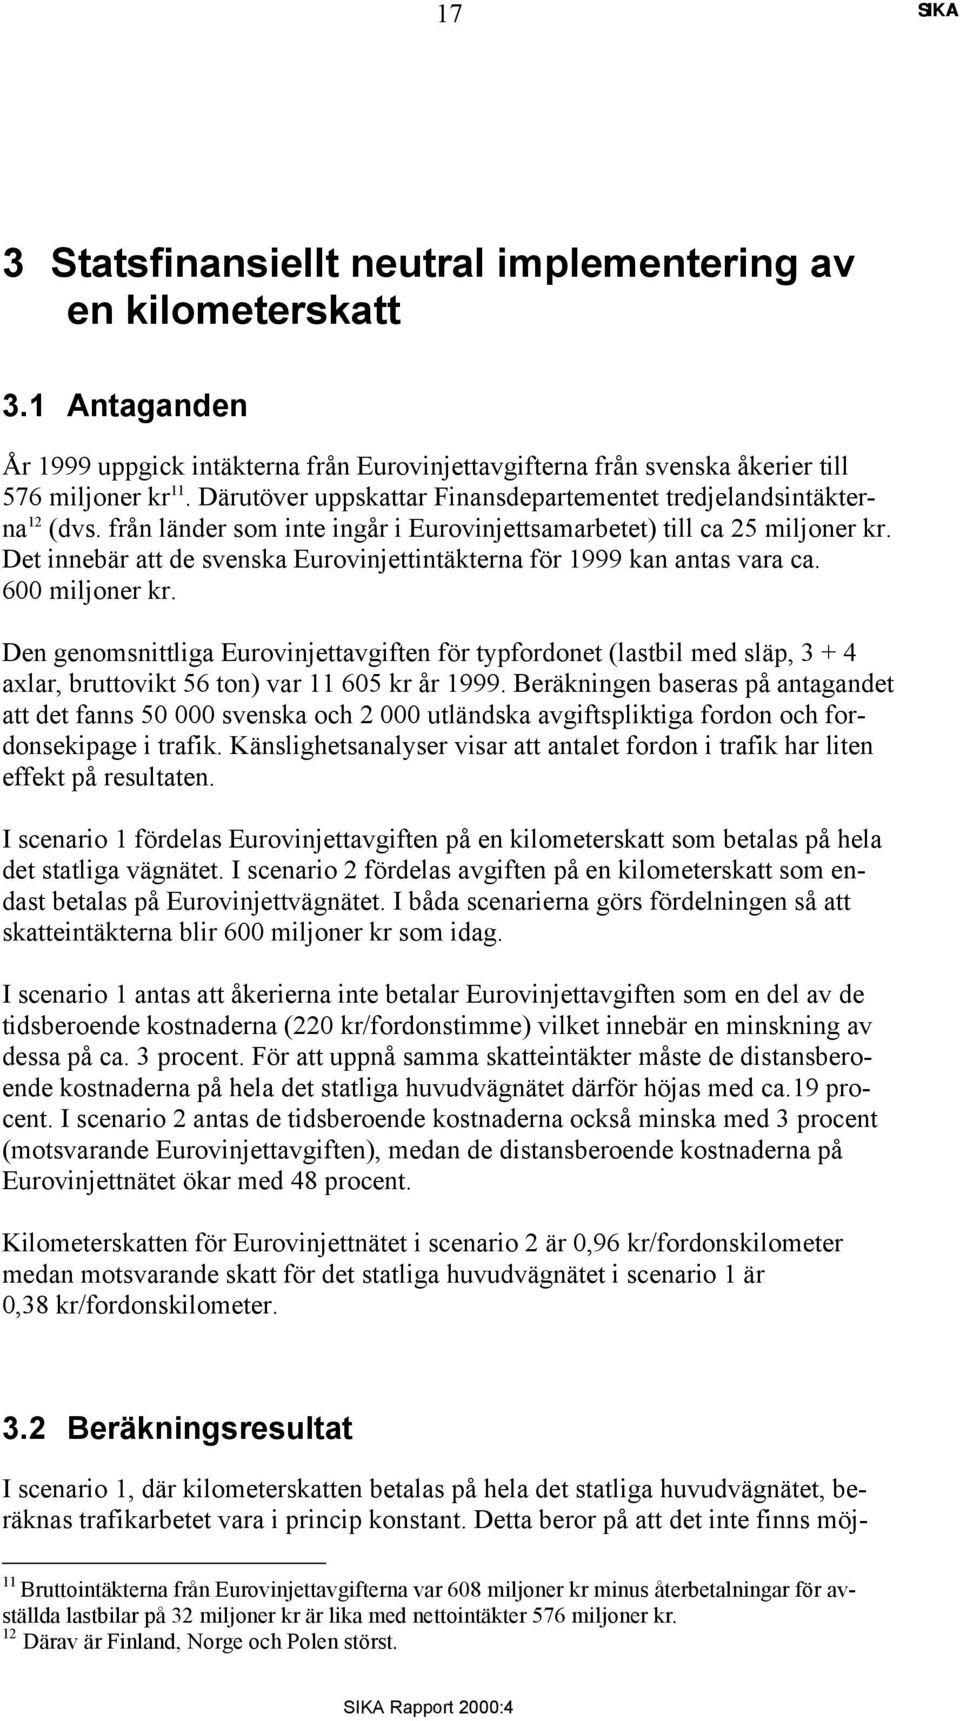 Det innebär att de svenska Eurovinjettintäkterna för 1999 kan antas vara ca. 600 miljoner kr.